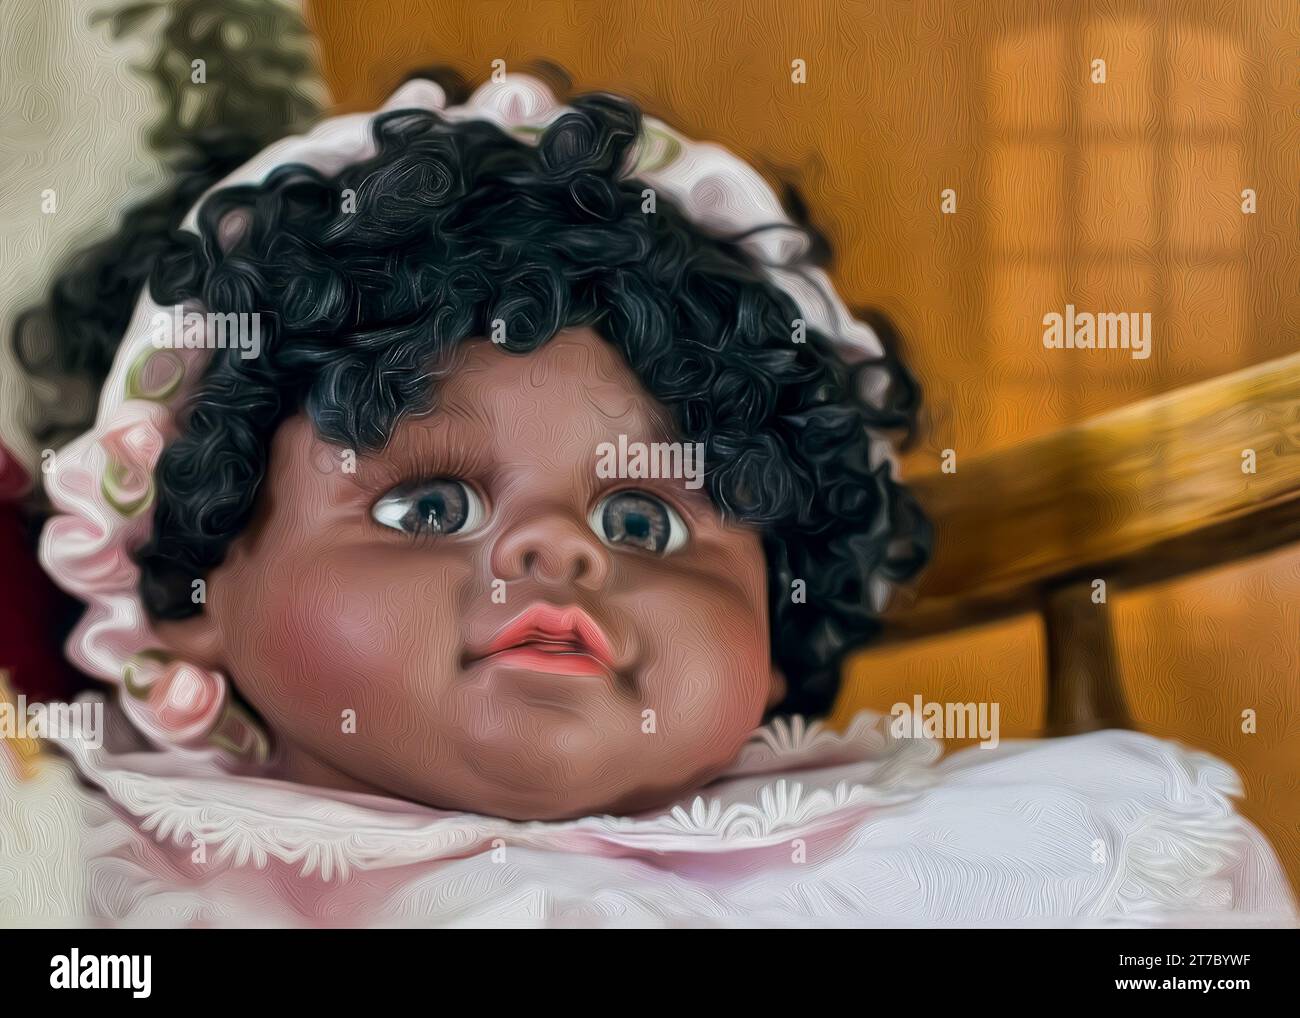 Peinture à l'huile numérique de poupée afro-américaine avec des cheveux bouclés mignons Banque D'Images